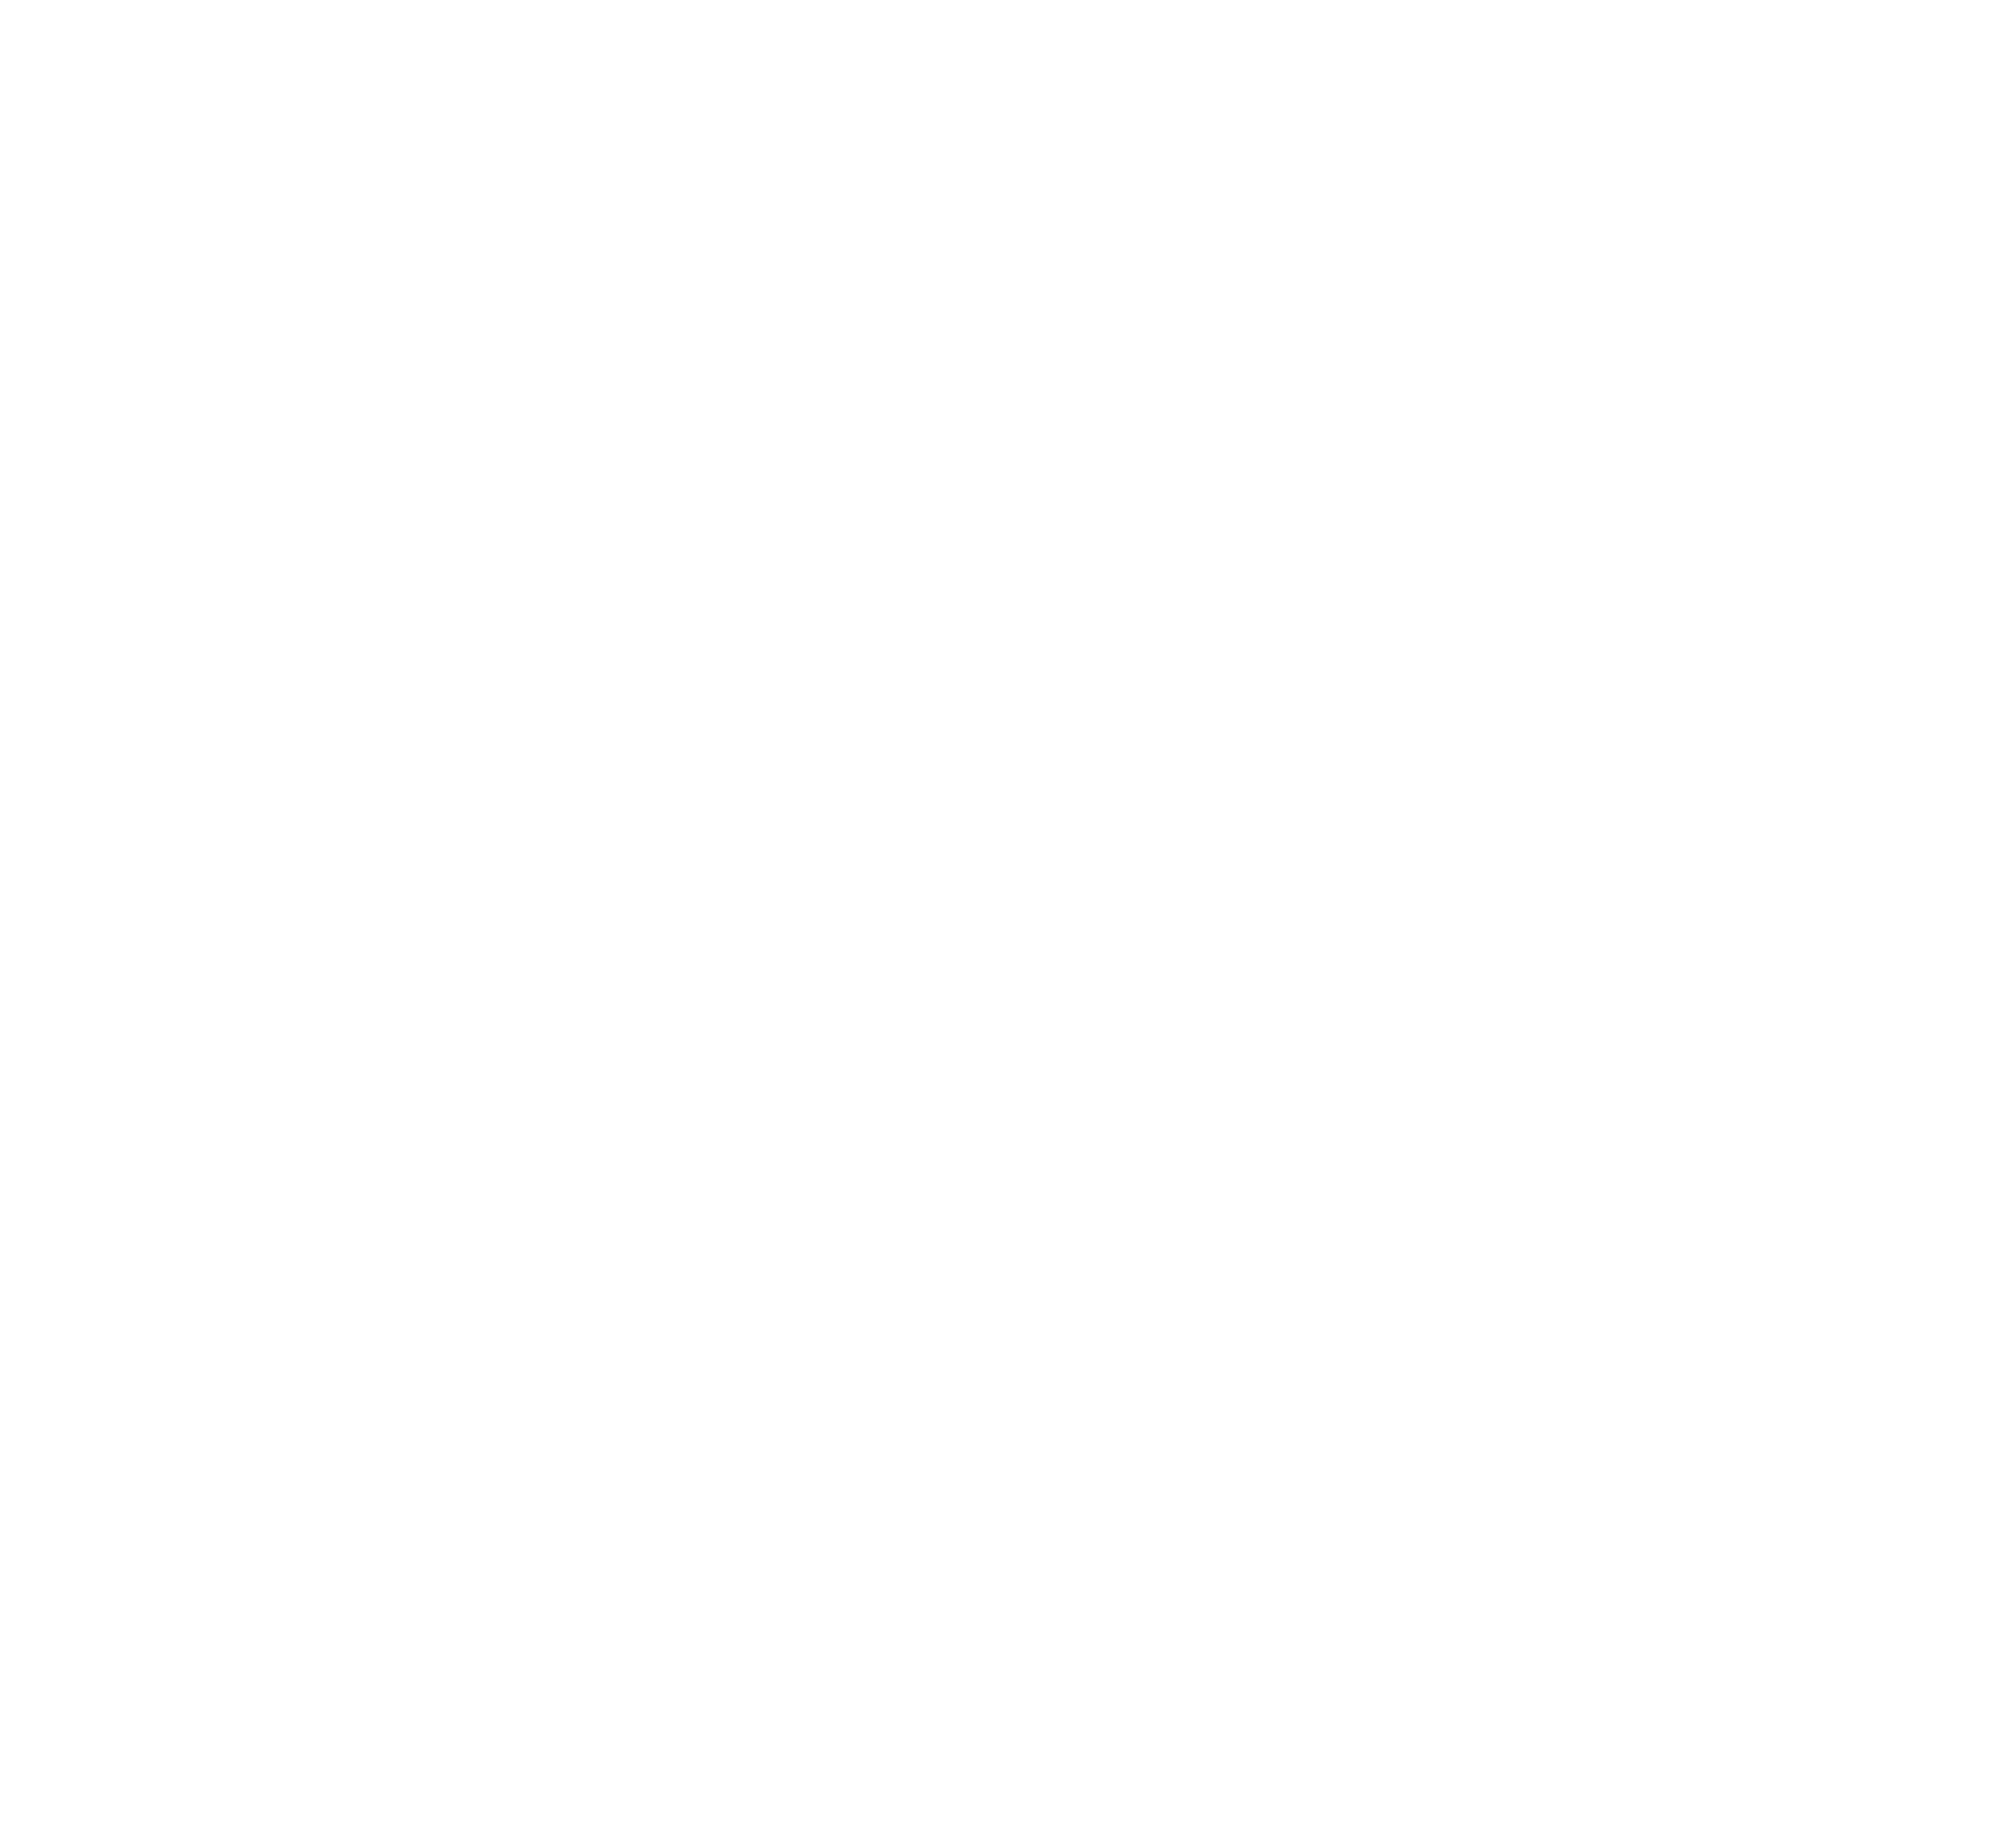 Tiergesundheitszentrum am Bürgerhaus Süd logo